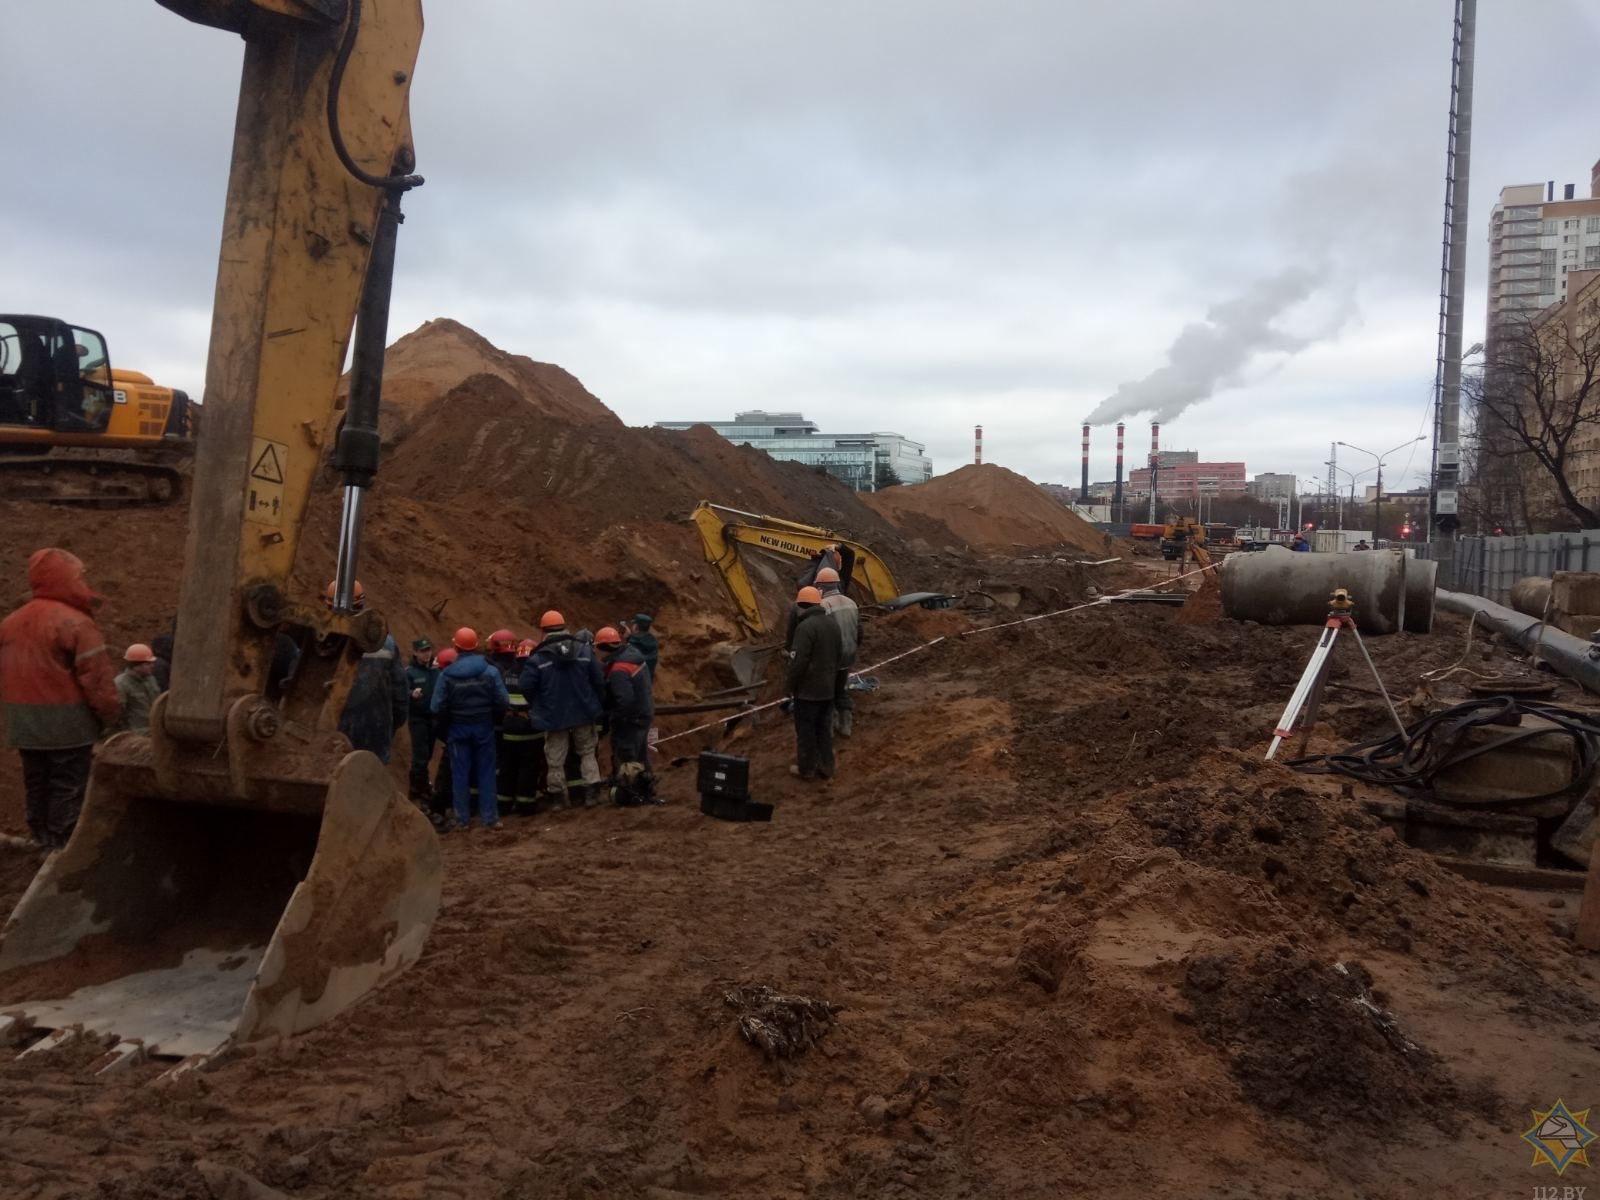   ЧП в Минске: рабочих засыпало песком на стройке